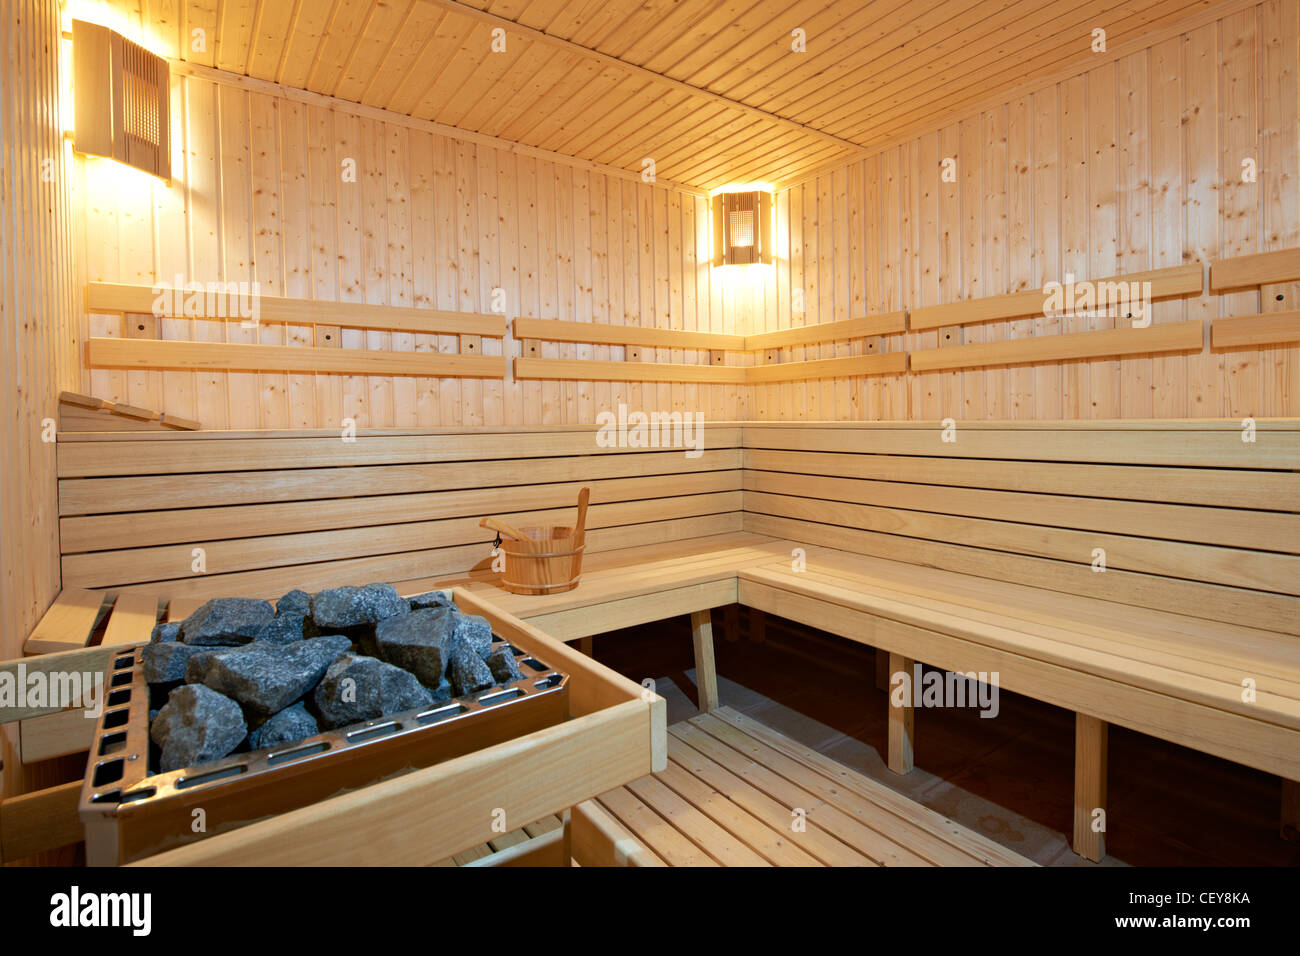 Finlandia madera nueva sauna de estilo Foto de stock